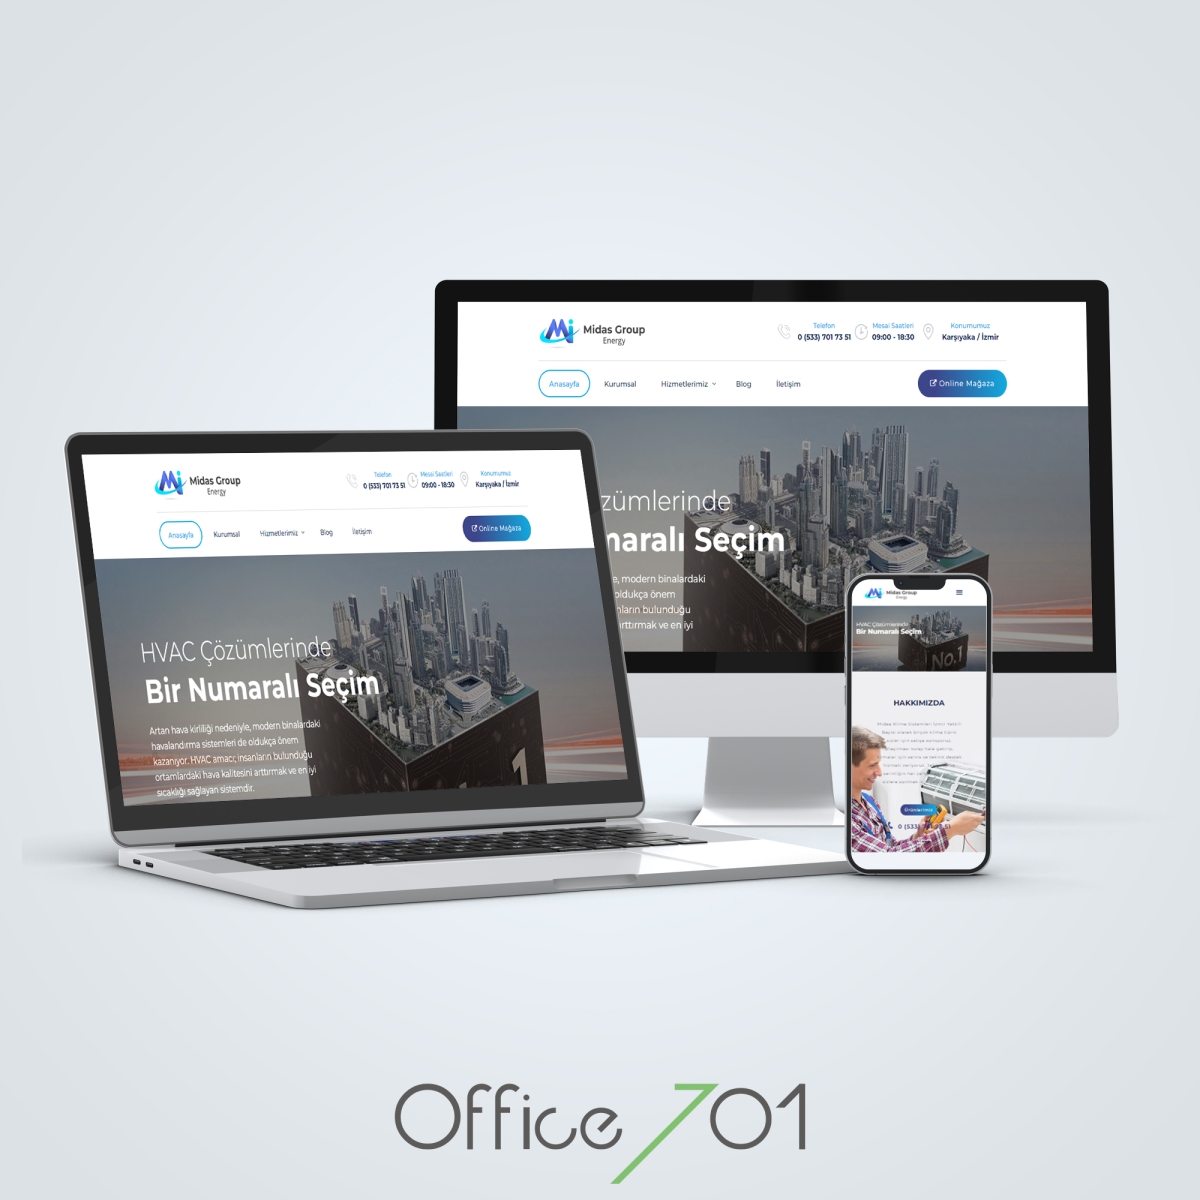 Office701 | Midas Group Energy | Cooling Sytsem Website Design